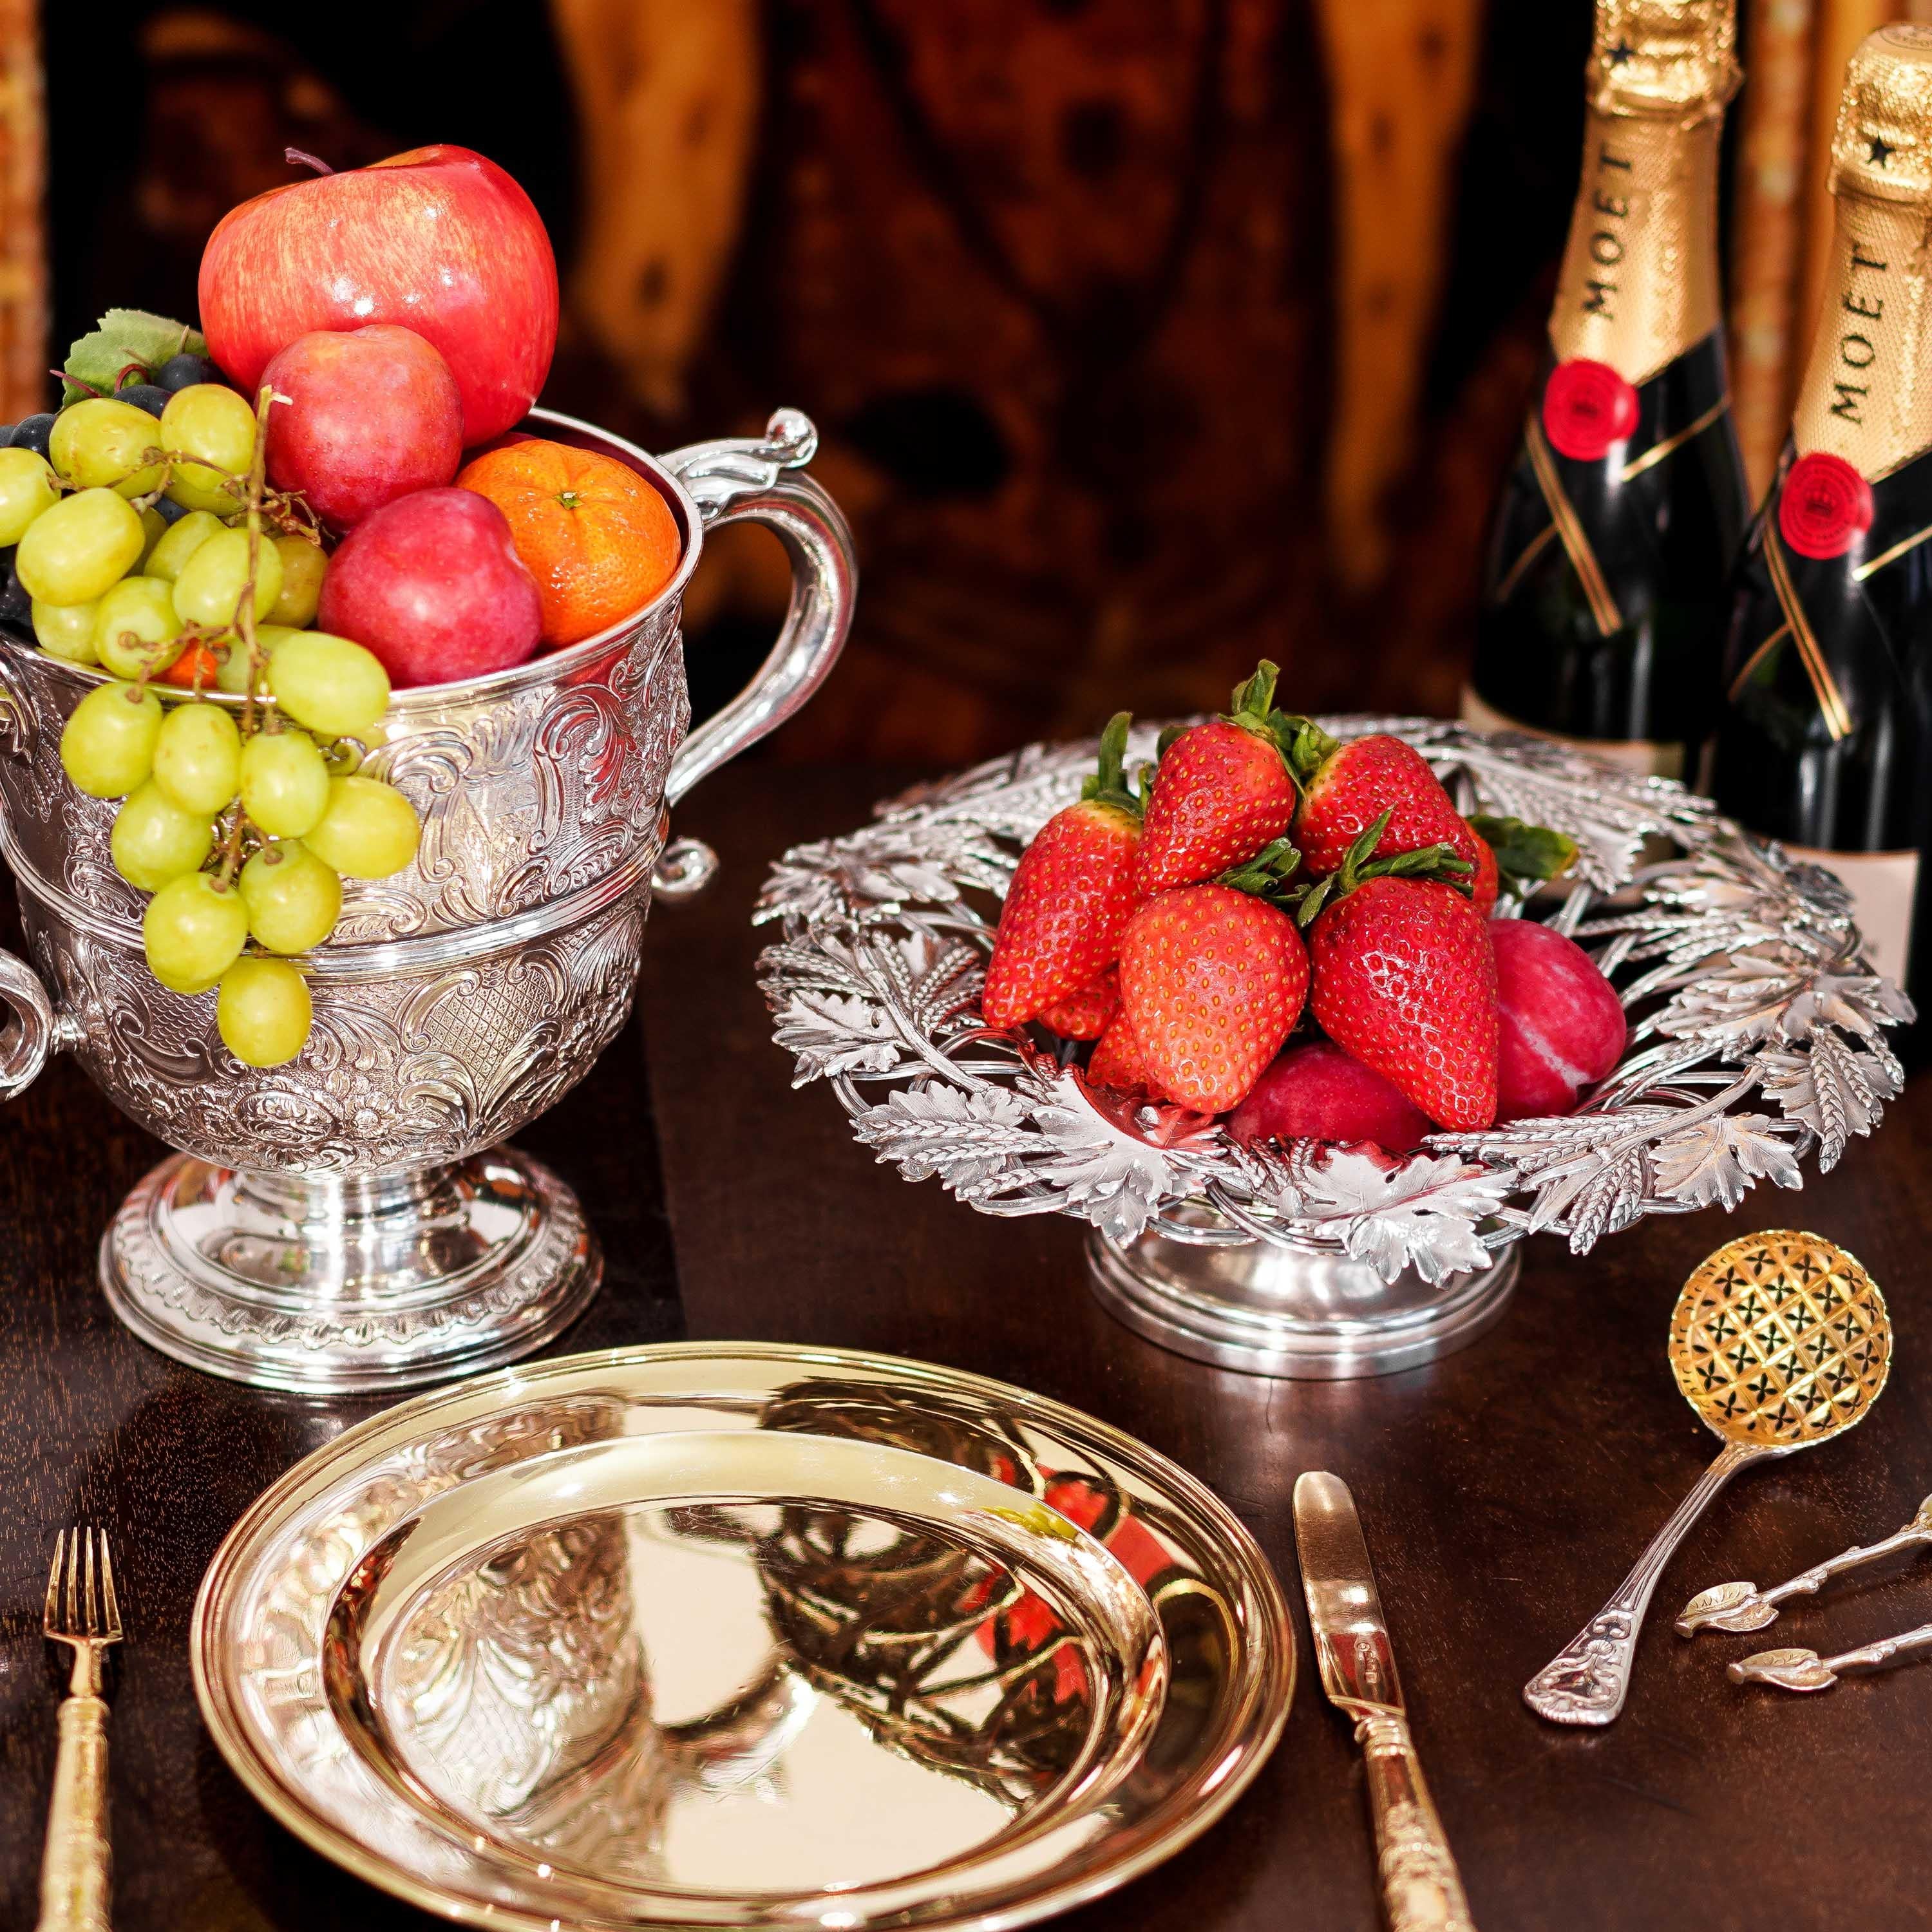 Nous avons le plaisir de vous proposer ce magnifique ensemble de six couteaux et fourchettes à fruits/dessert en argent massif doré. L'ensemble a été réalisé par l'orfèvre Aaron Hadfield de Sheffield en 1839.
 
Tous les couverts sont méticuleusement